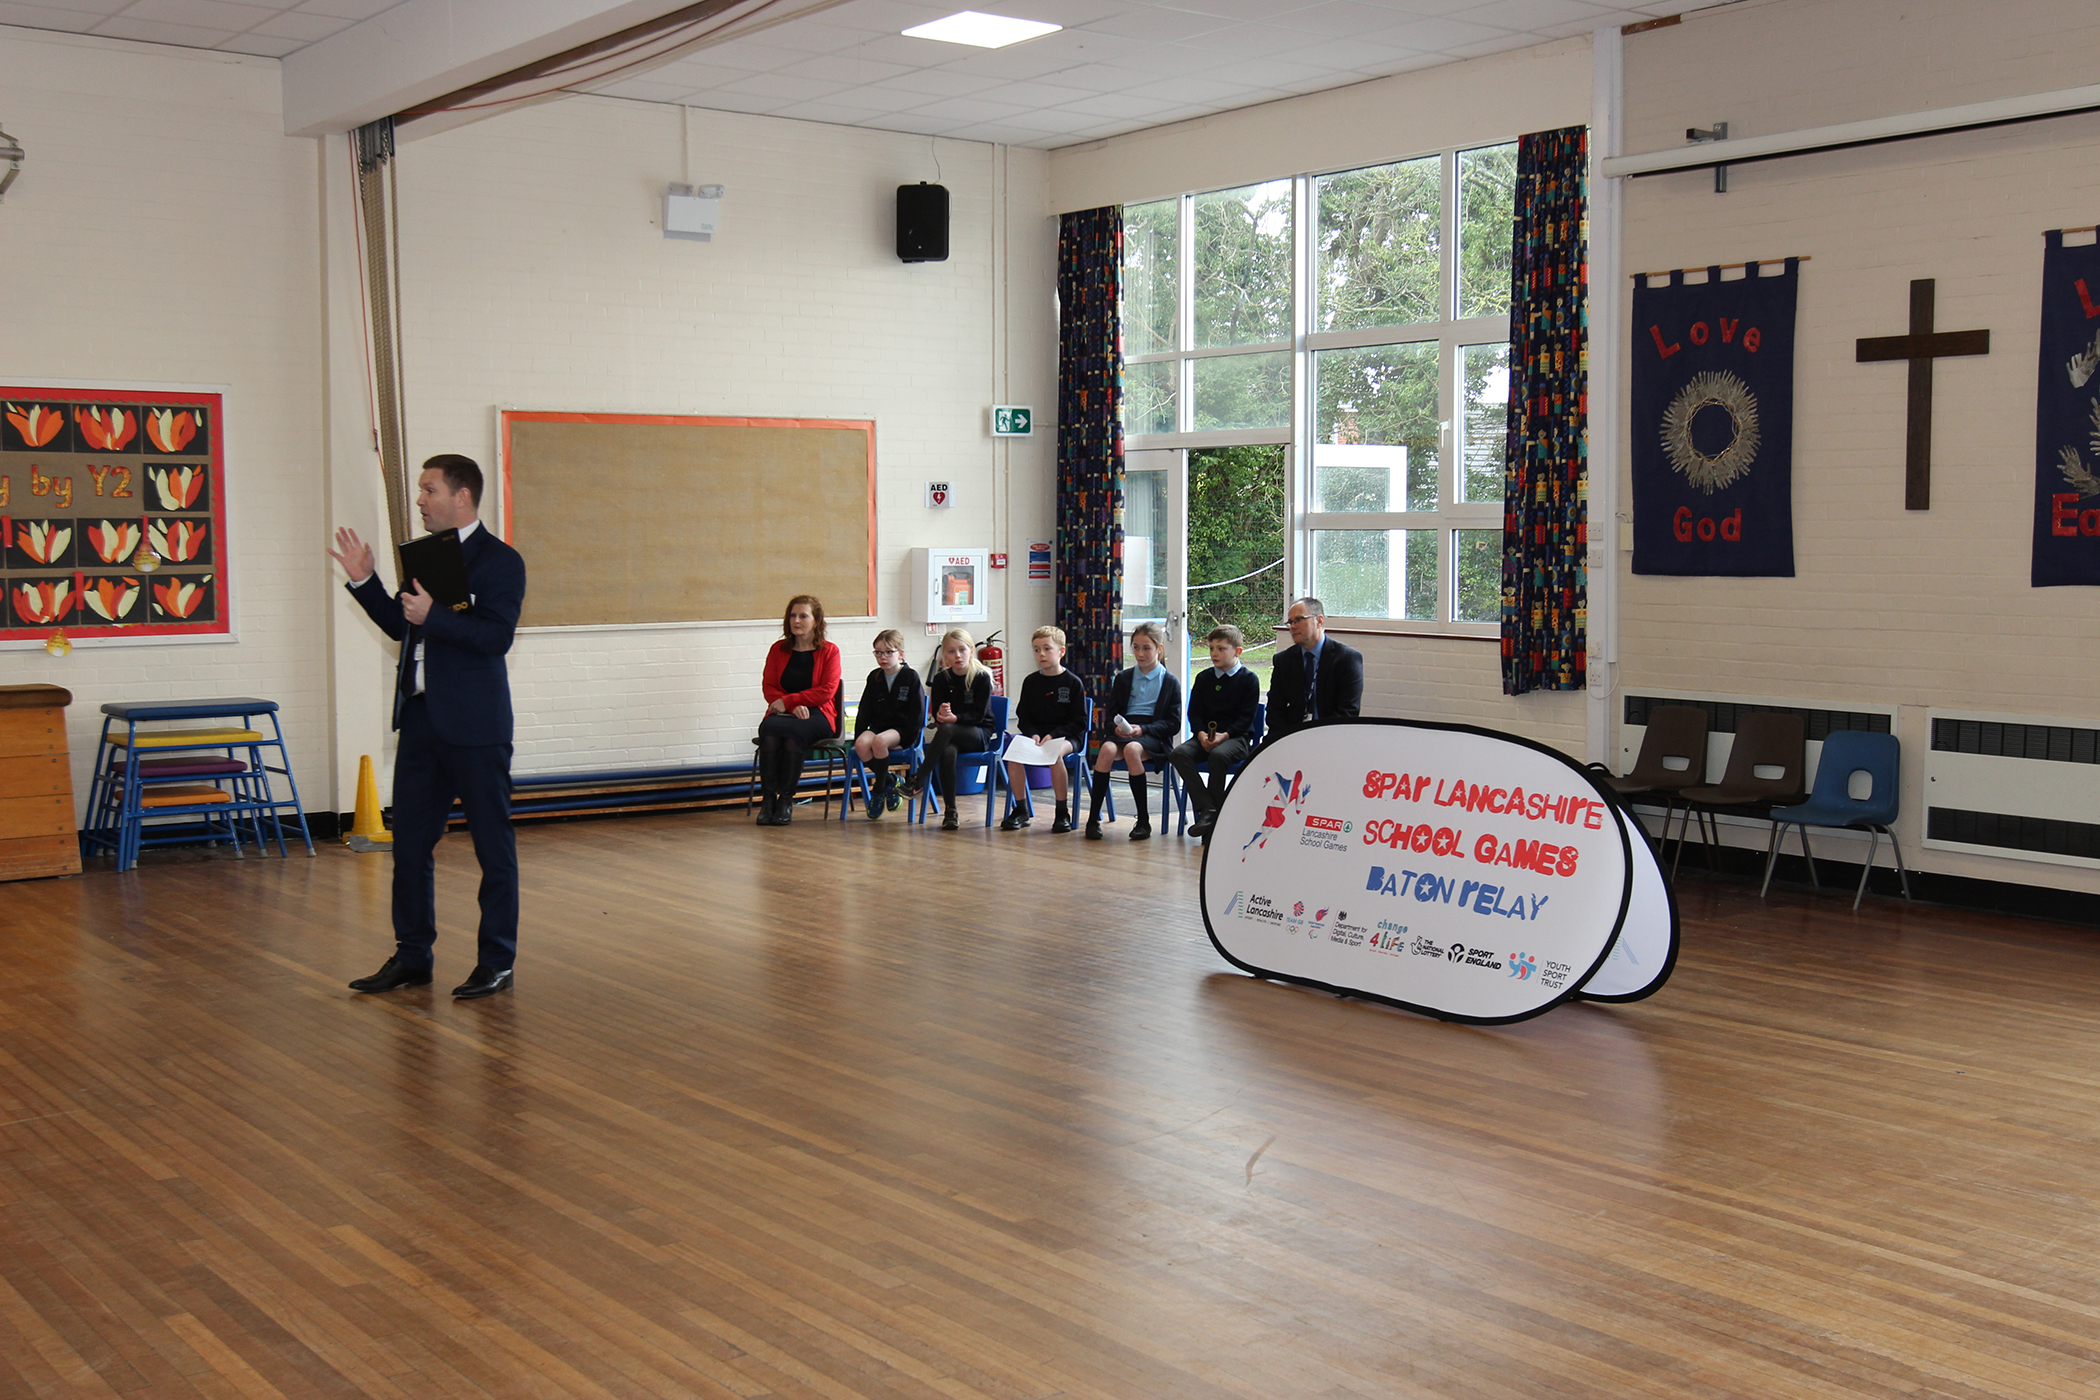 SPAR Lancashire School Games Launch 8